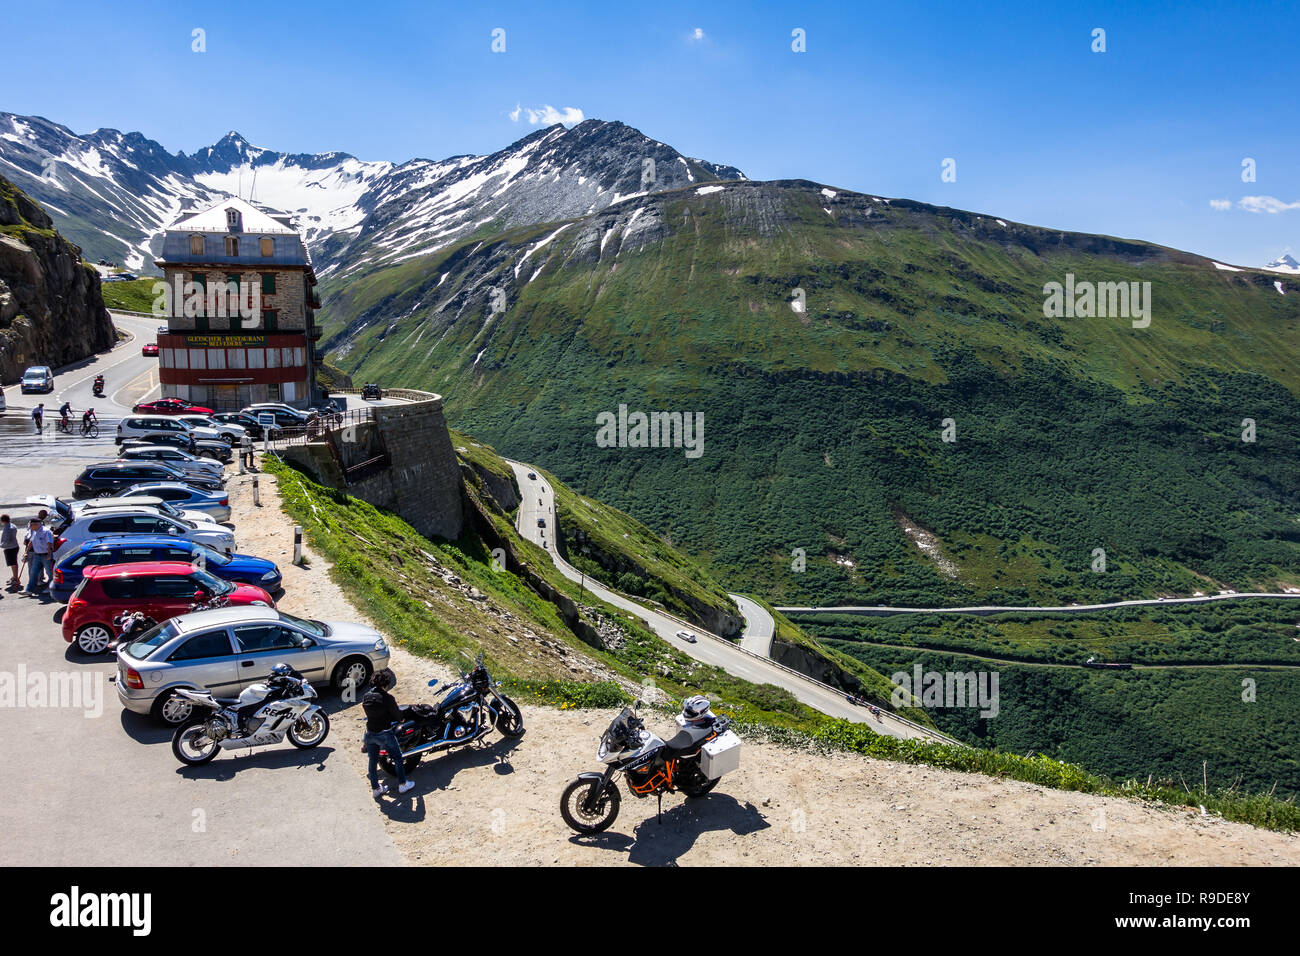 Motorräder und Autos im Hotel Belvedere auf der Straße geparkt, Furkapass, in der Nähe der Rhonegletscher. Wallis, Schweiz, Juli 2018 Stockfoto